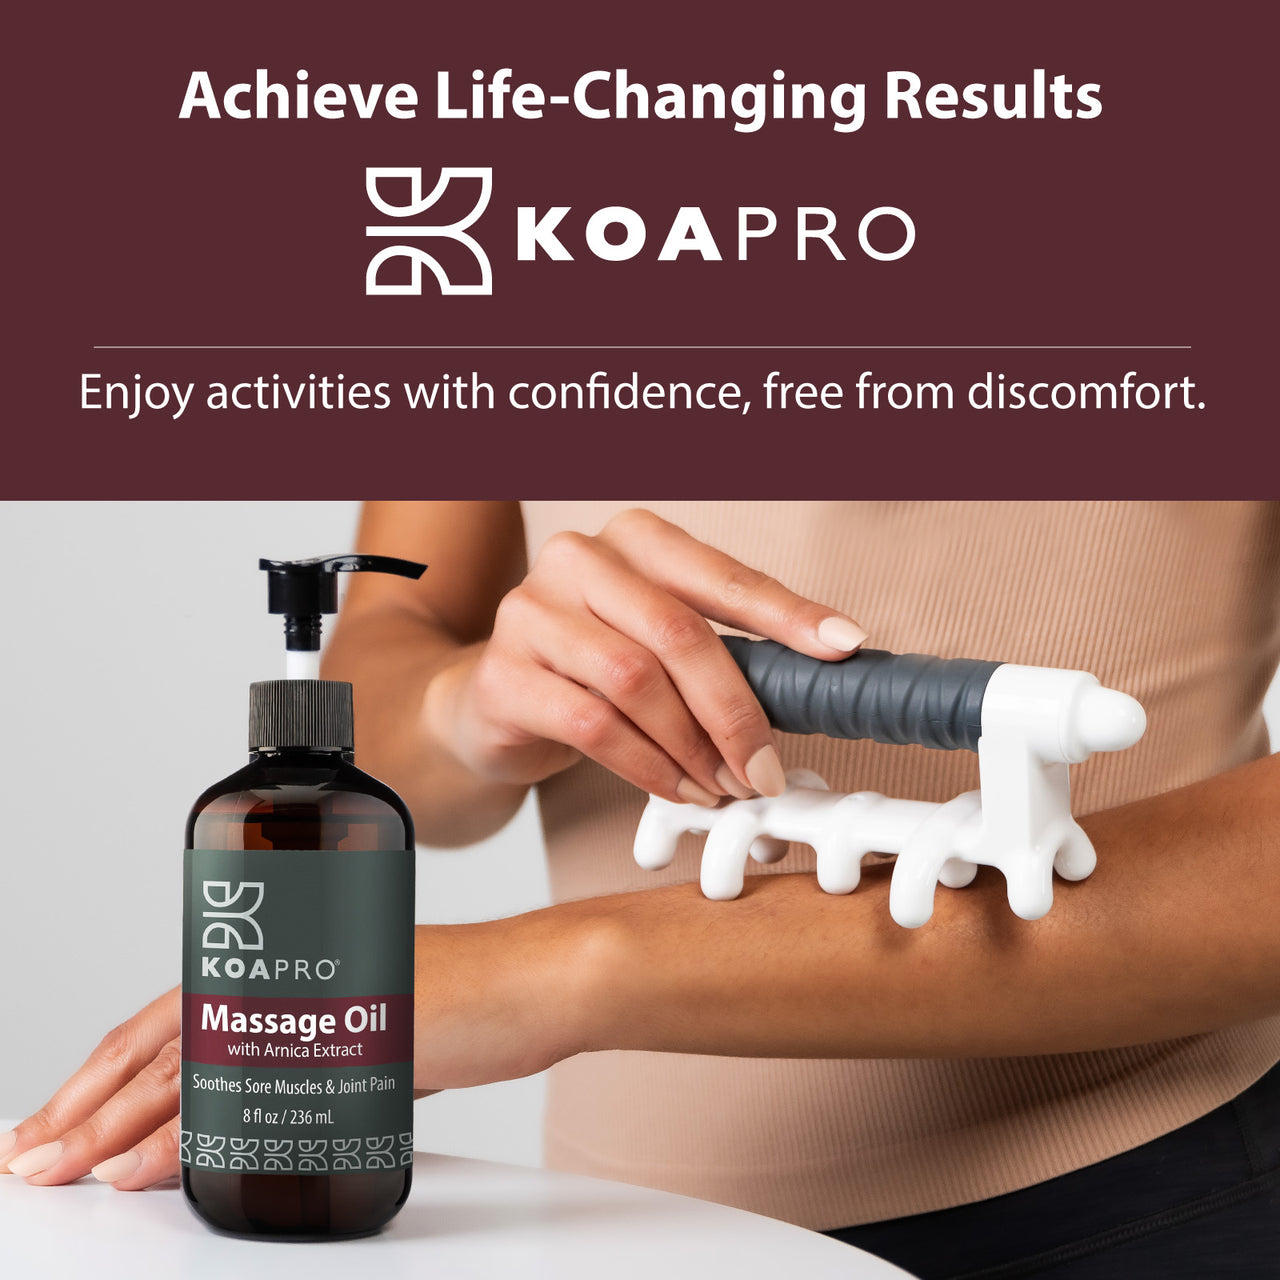 KOAPRO Massage Oil - Achieve Life-Changing Results. Woman using KOAPRO Massage Oil with Original Fascia Massage Tool.